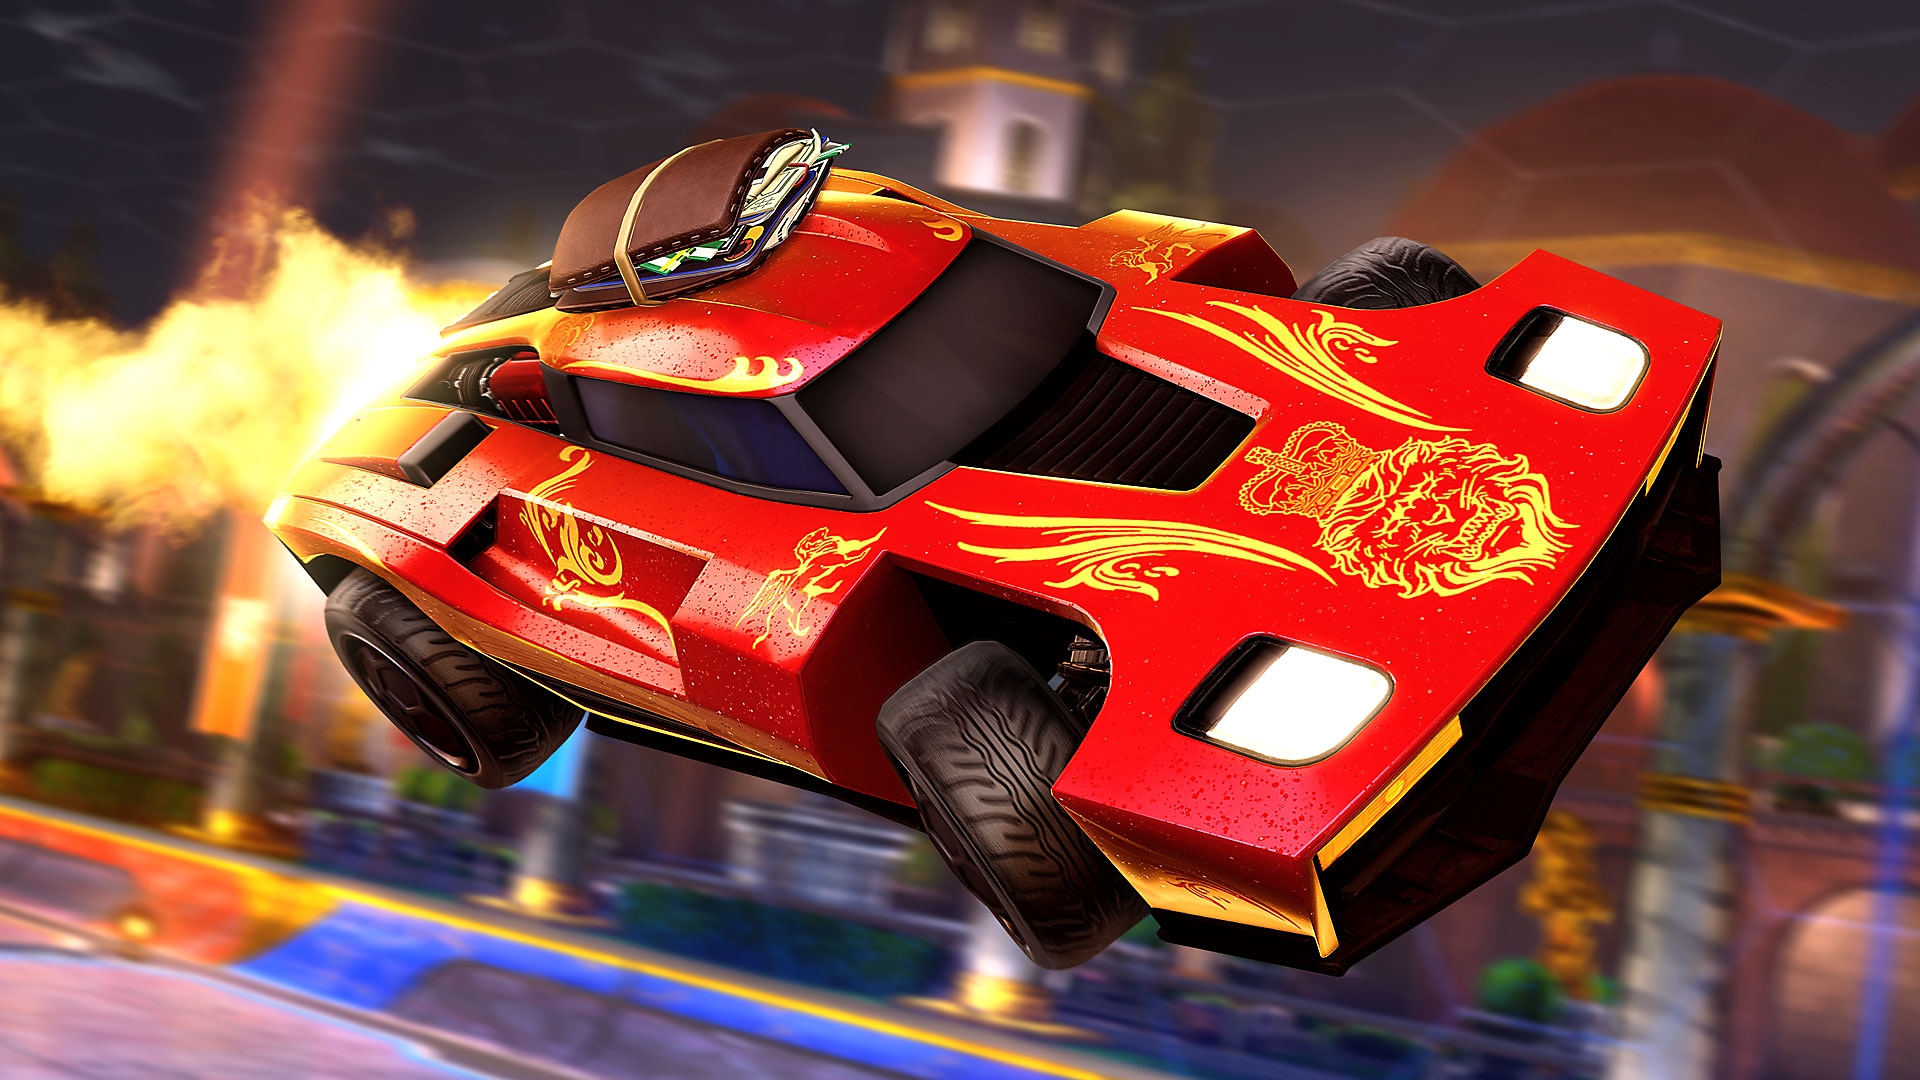 Rocket League – posnetek zaslona prikazuje rdeč športni avtomobil s plameni iz izpuha